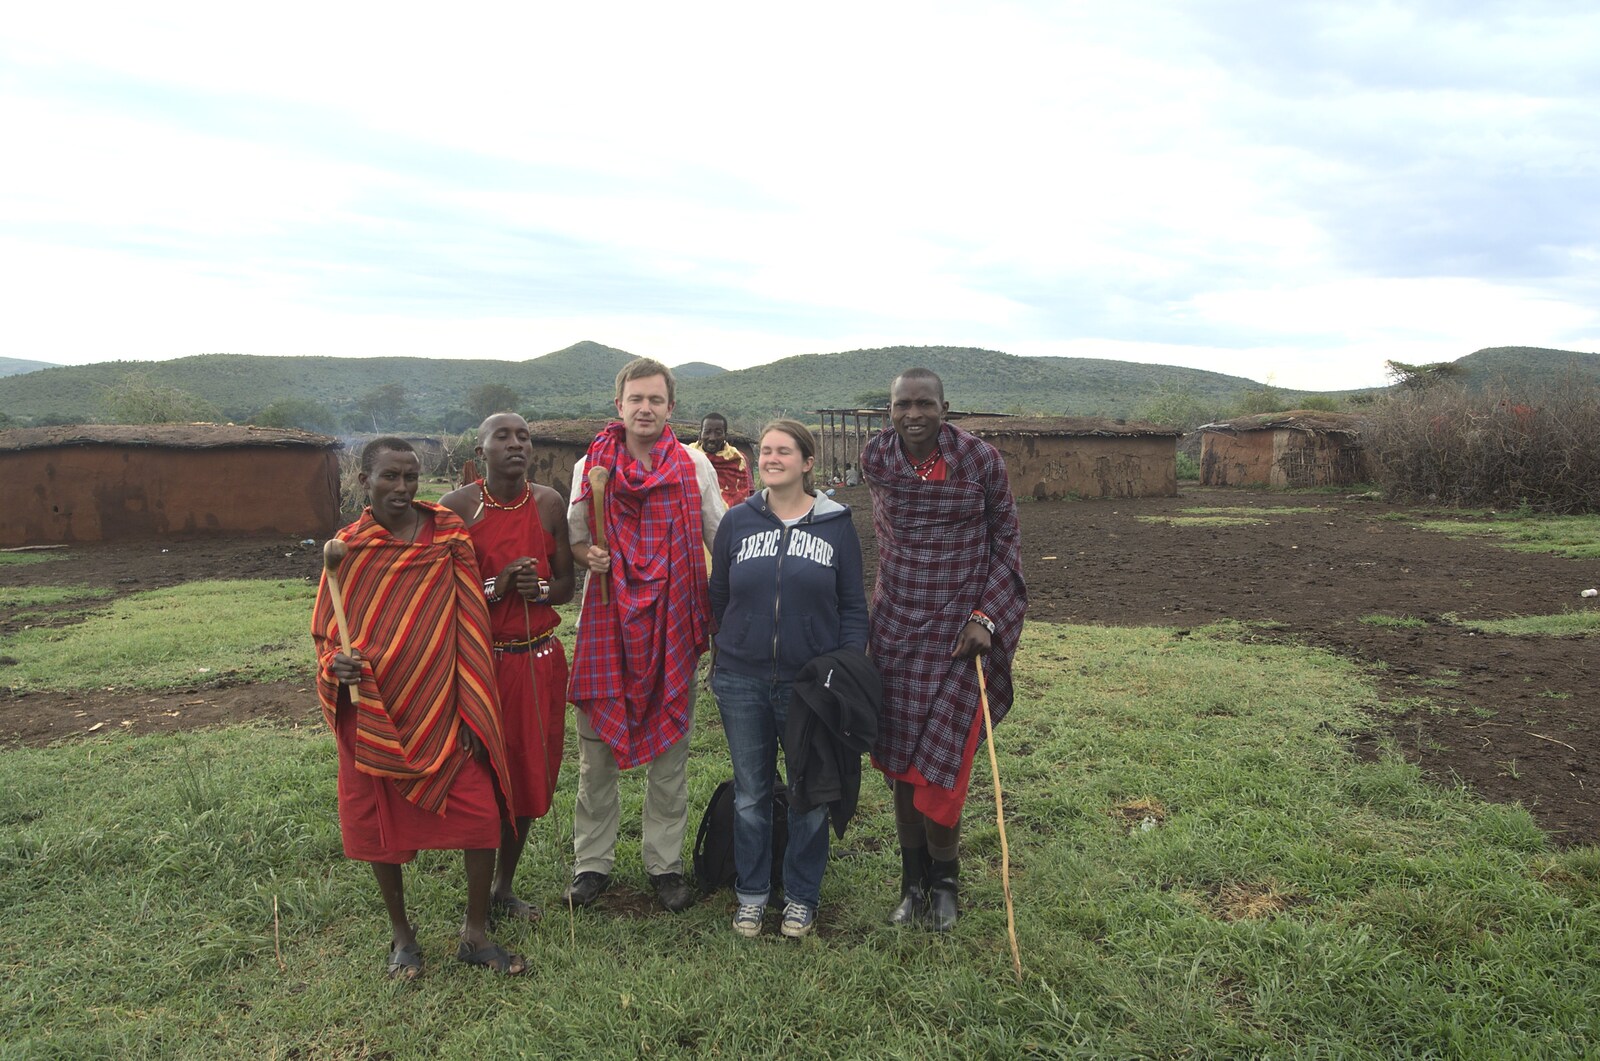 A group photo from Maasai Mara Safari and a Maasai Village, Ololaimutia, Kenya - 5th November 2010